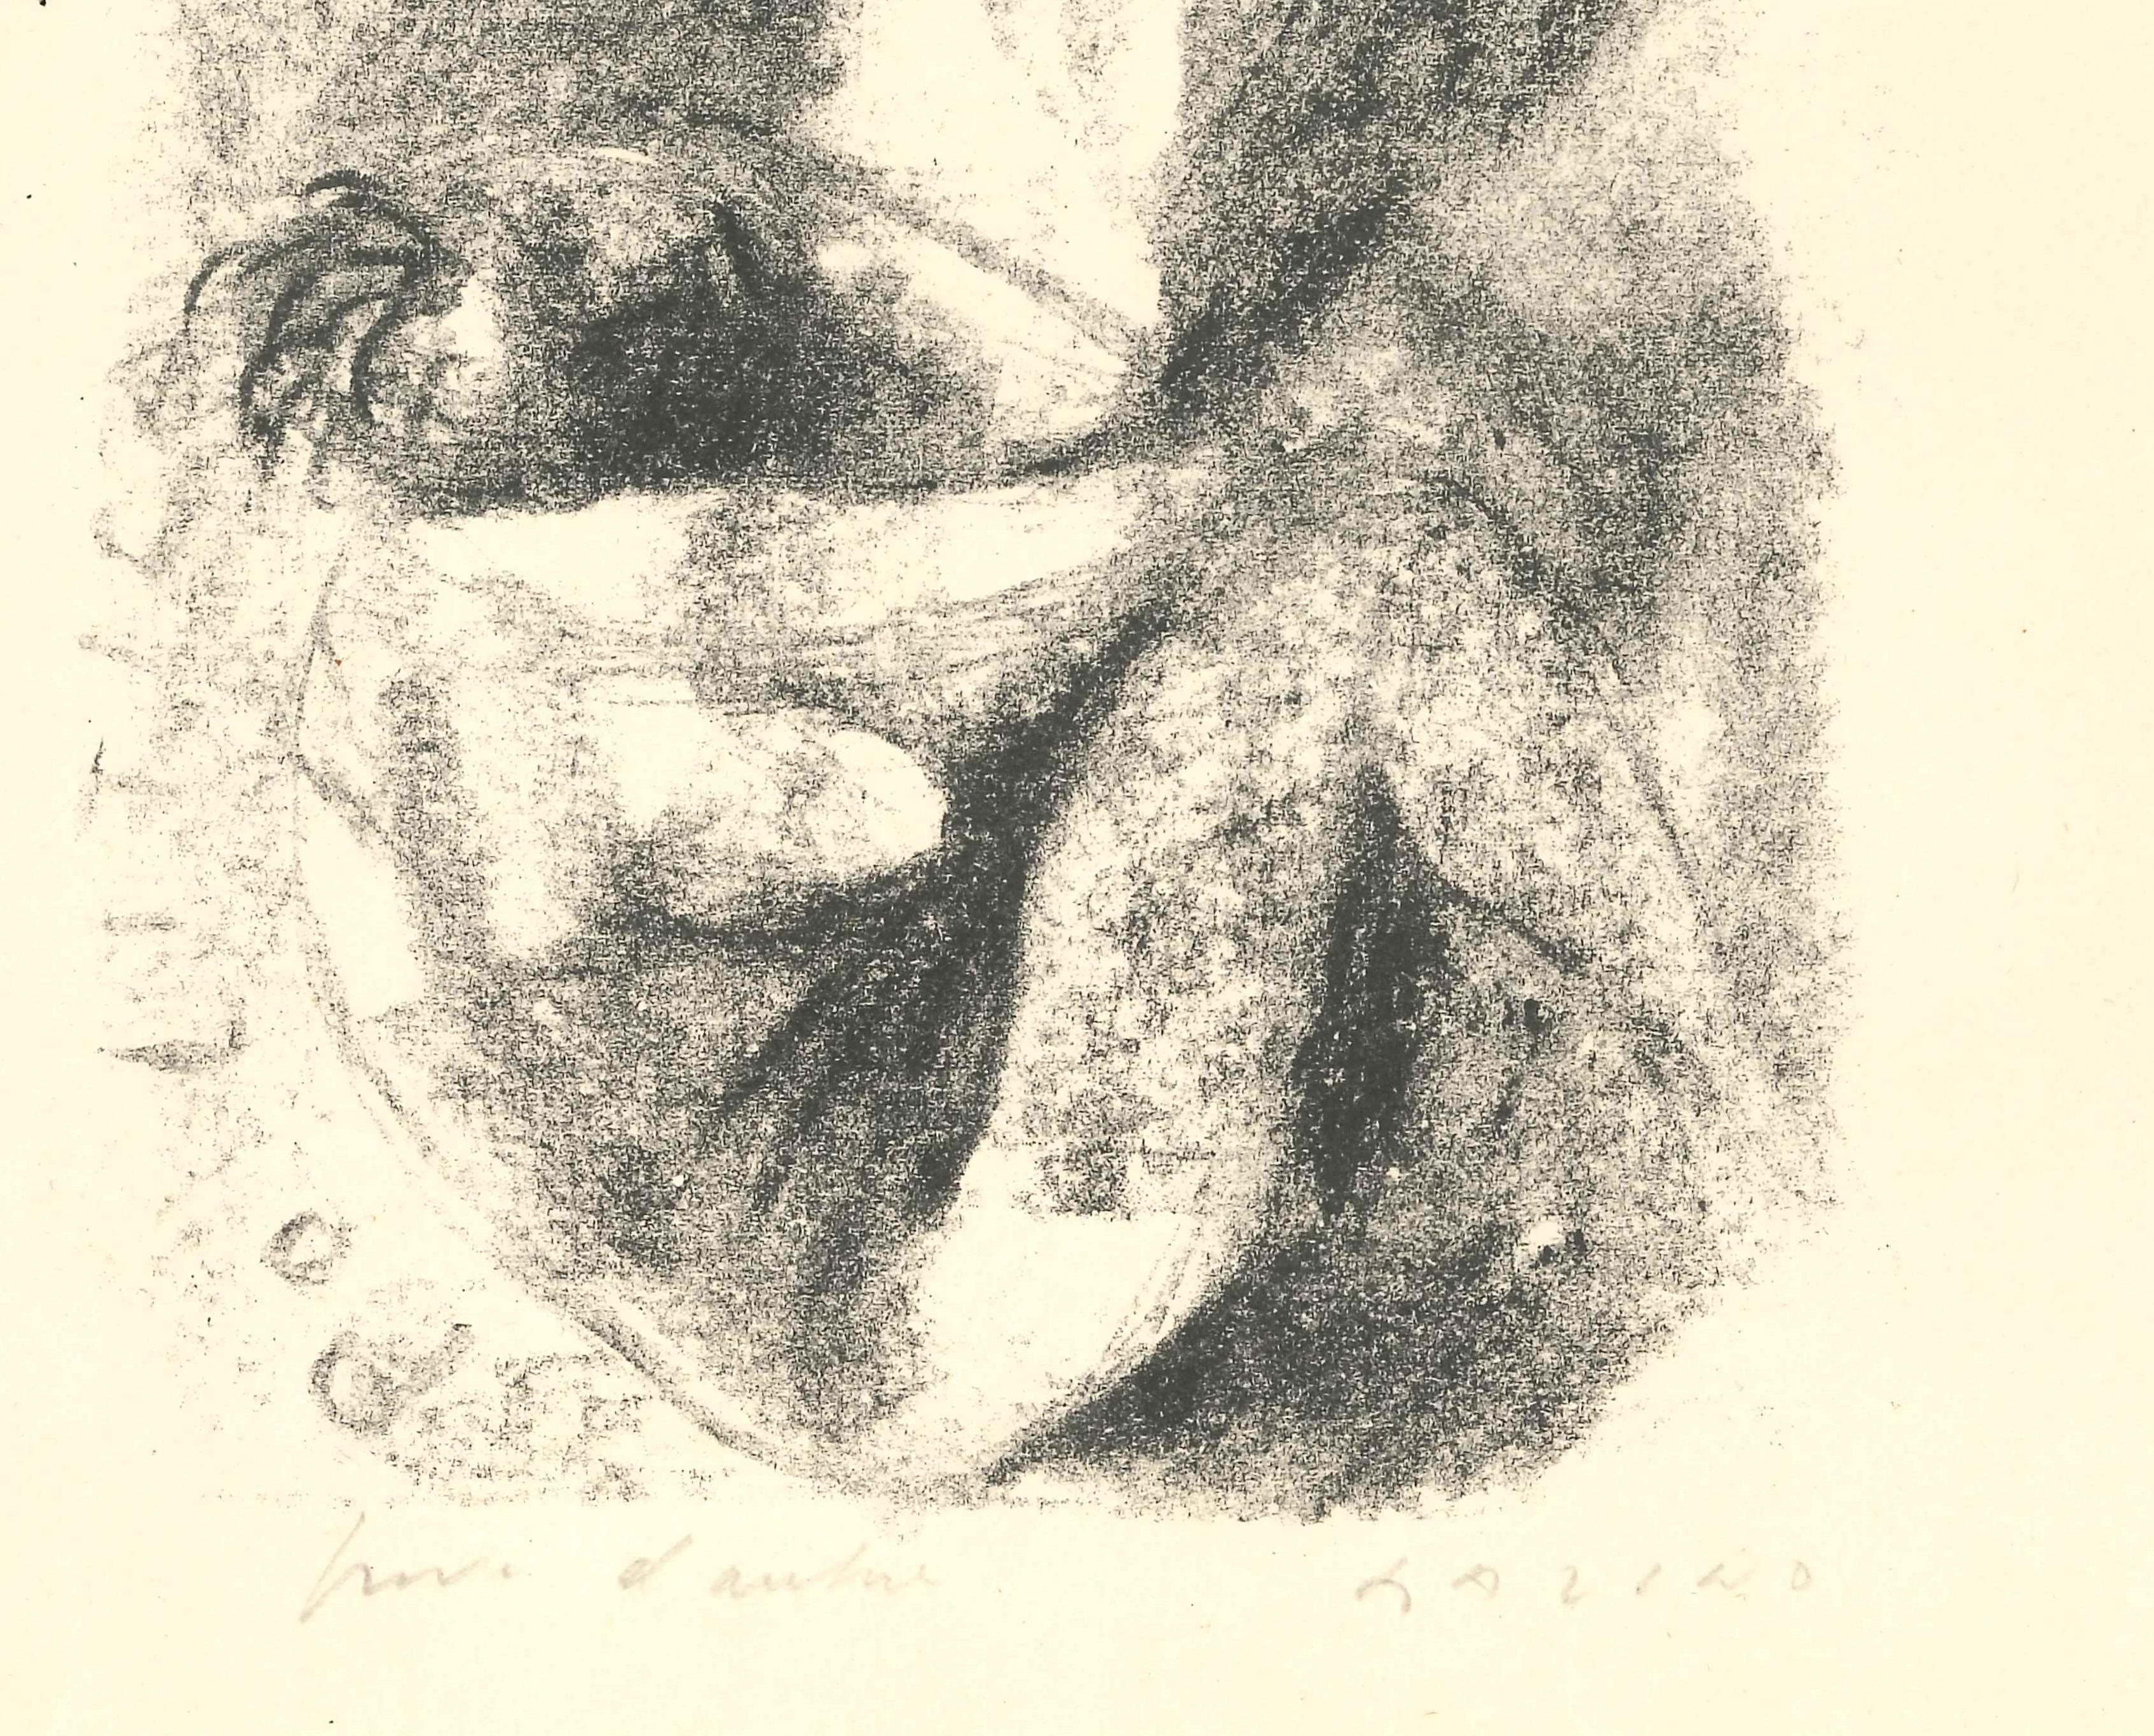 Dimensions de l'image : 19x12 cm.
Signé à la main, sur papier de couleur ivoire. Épreuve d'artiste. En excellent état.
Passepartout inclus : 49 x 34 cm
Référence : G. Di S. Lazzaro, 33 ; Toninelli, 1947